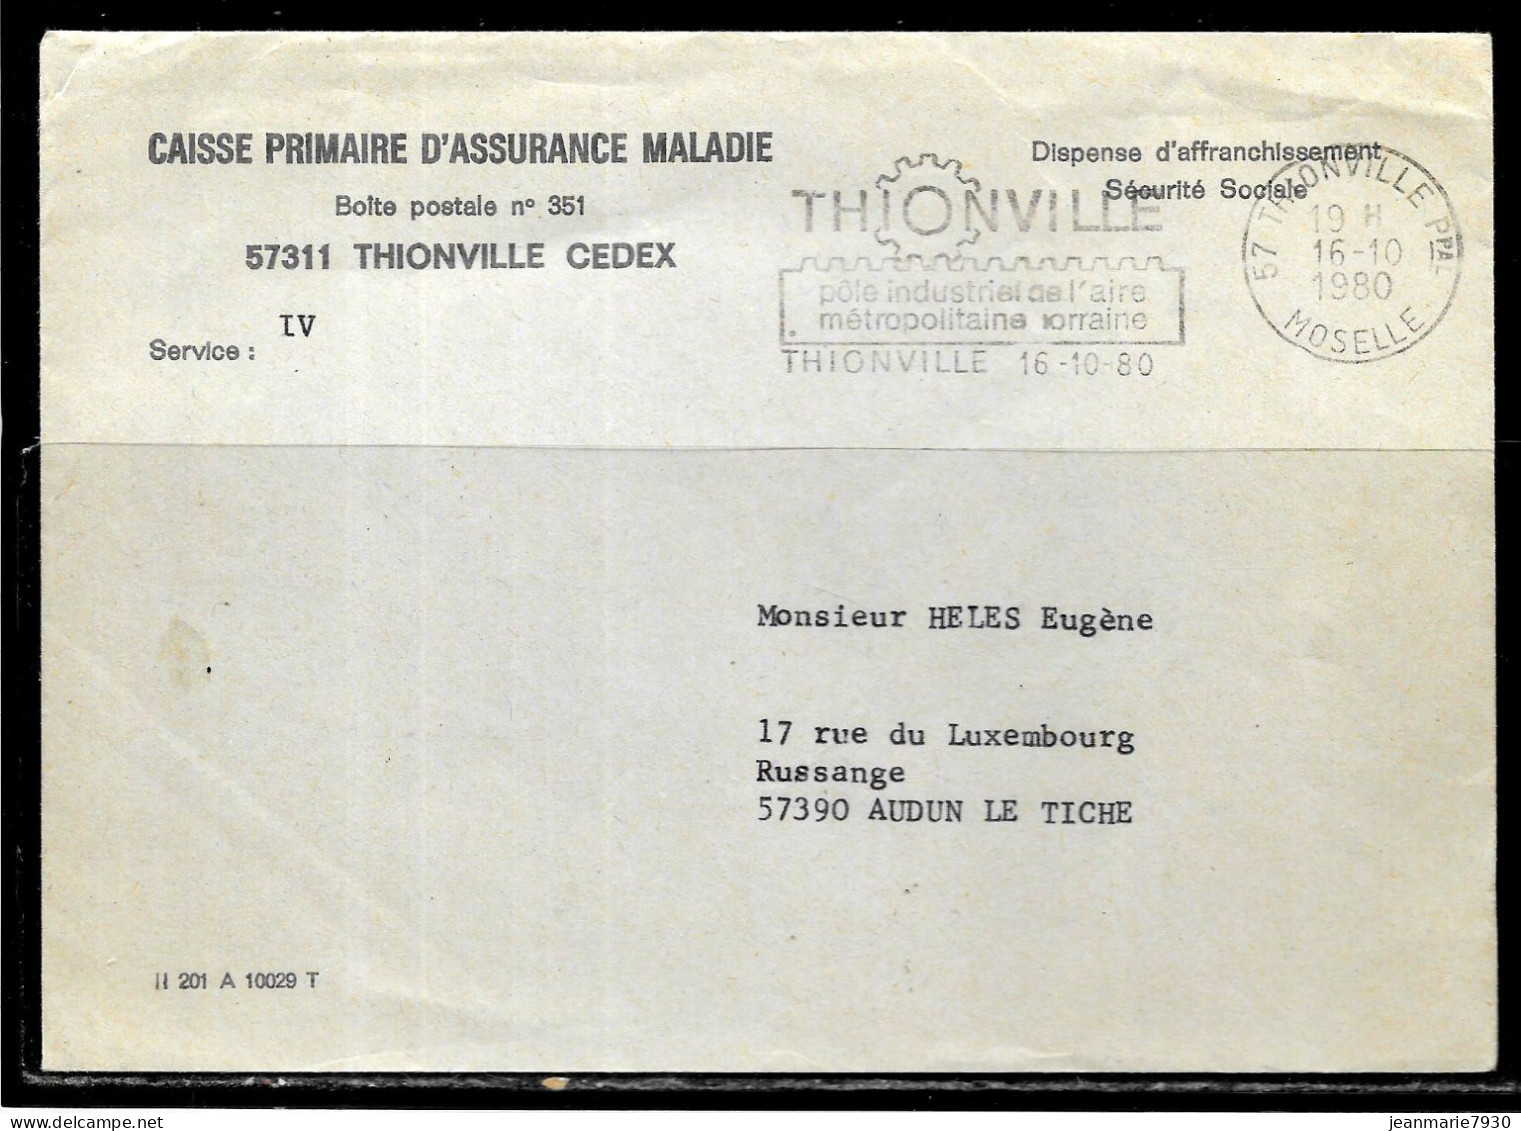 P246 - LETTRE EN FRANCHISE DE THIONVILLE DU 16/10/80 - CPAM - FLAMME - Civil Frank Covers